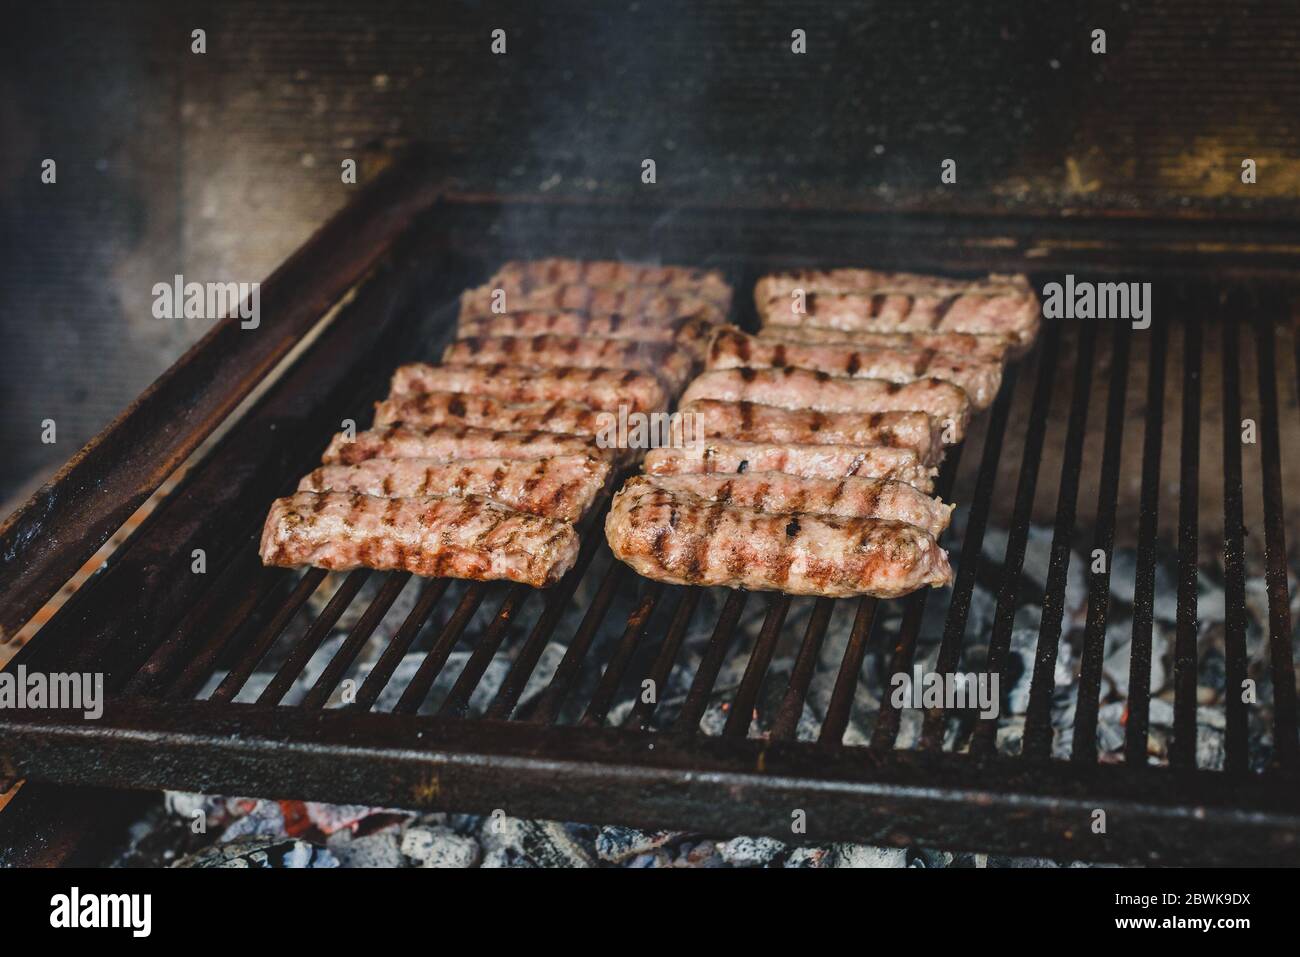 Griller de la viande sur un barbecue au charbon chaud. Préparation, cuisson de cafevcici, kebabs, saucisse de campagne sur barbecue au charbon de bois dans la cheminée extérieure. Tr Banque D'Images